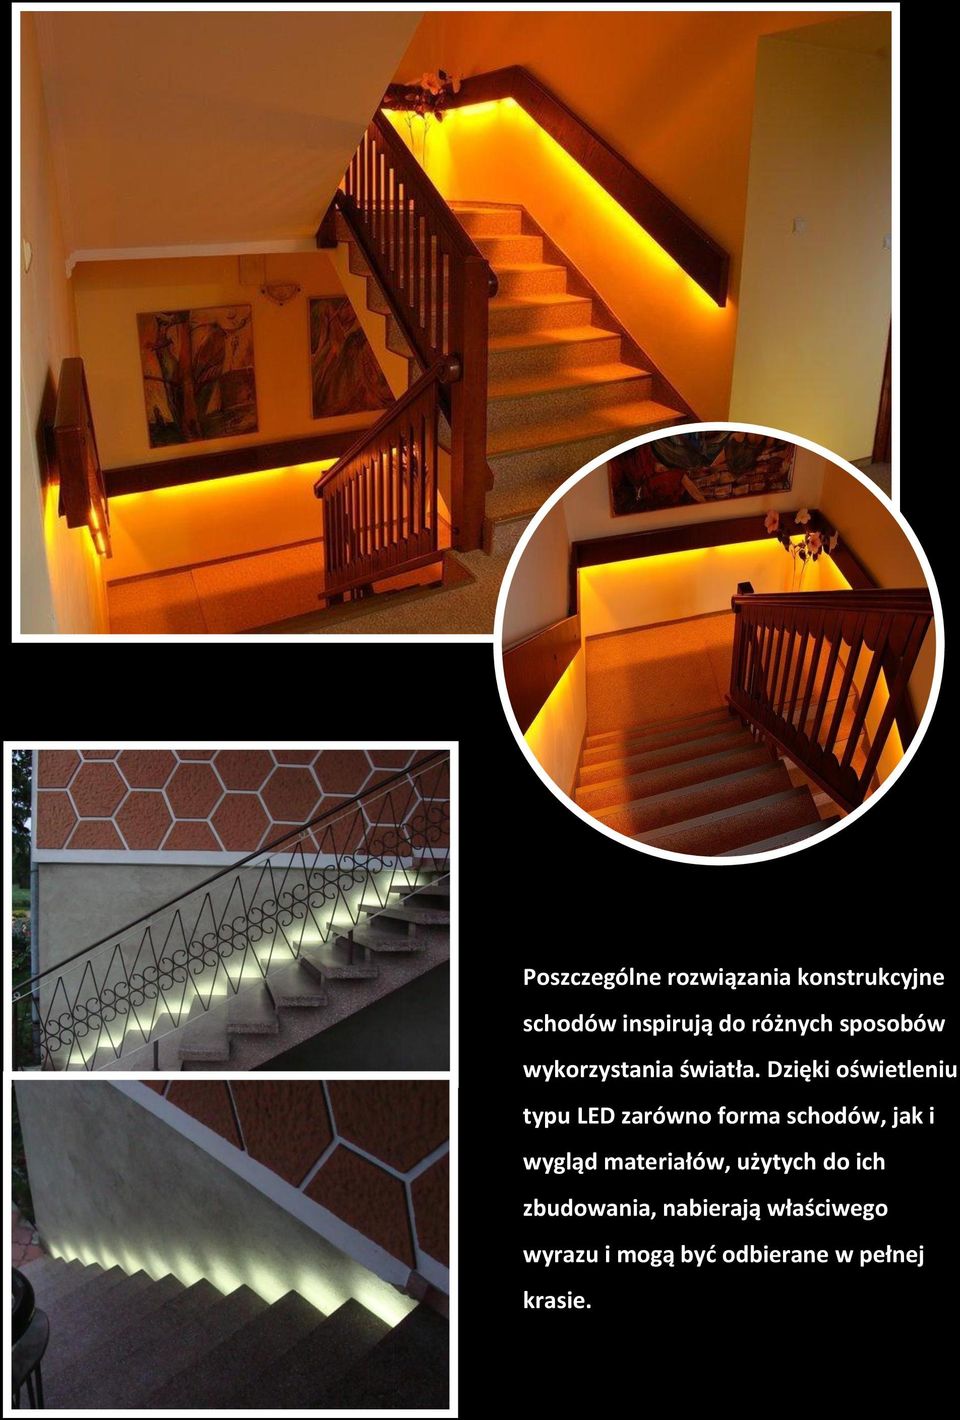 Dzięki oświetleniu typu LED zarówno forma schodów, jak i wygląd